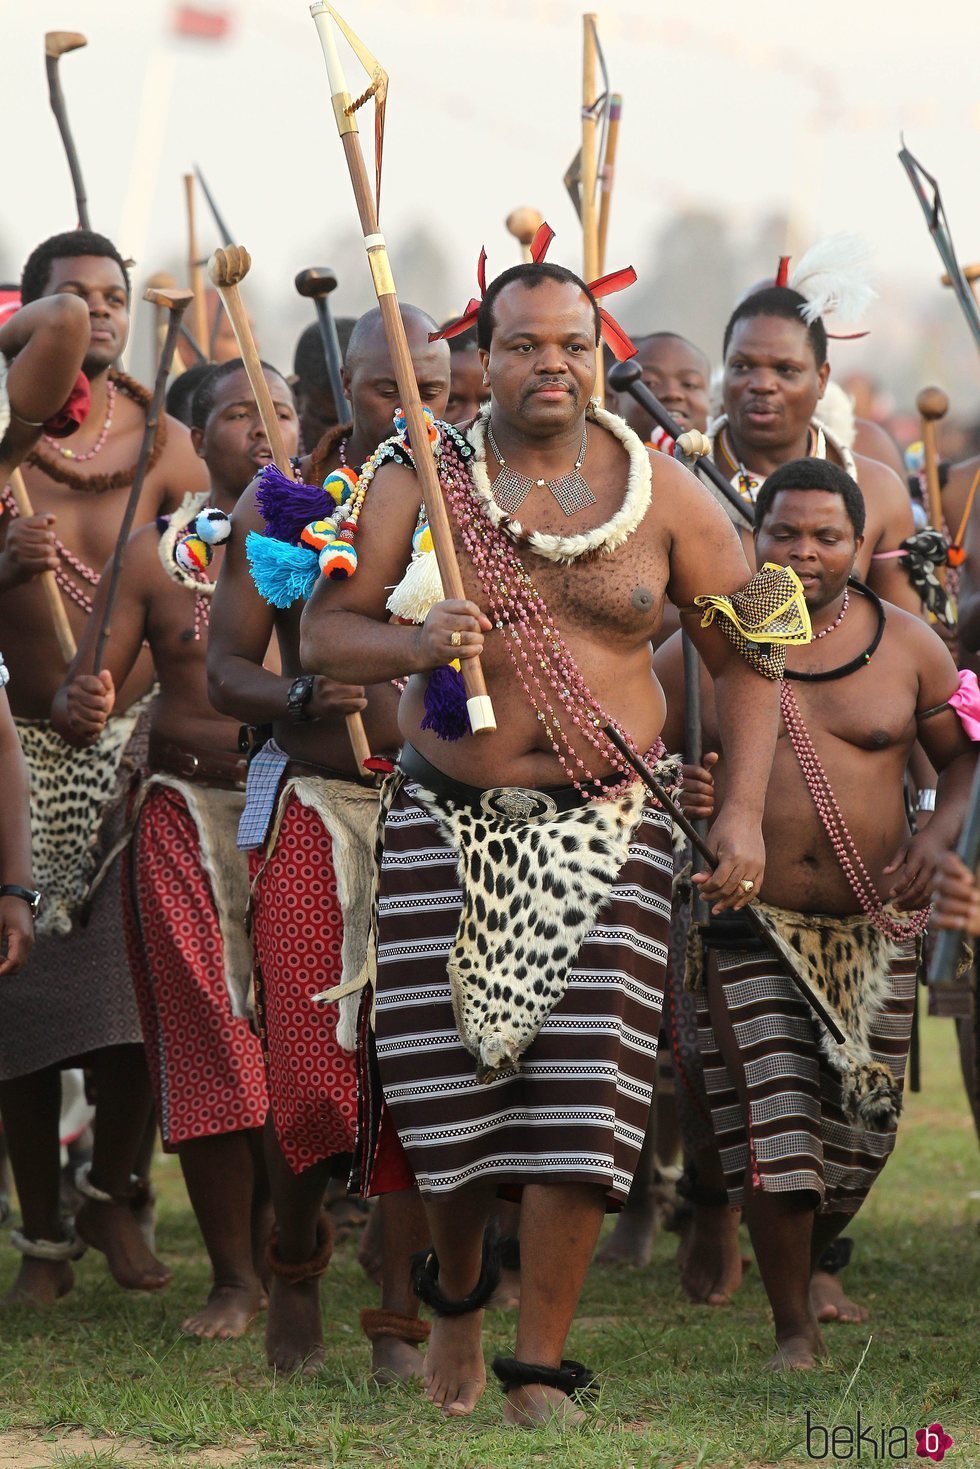 El Rey Mswati III de Suazilandia en un acto tribal